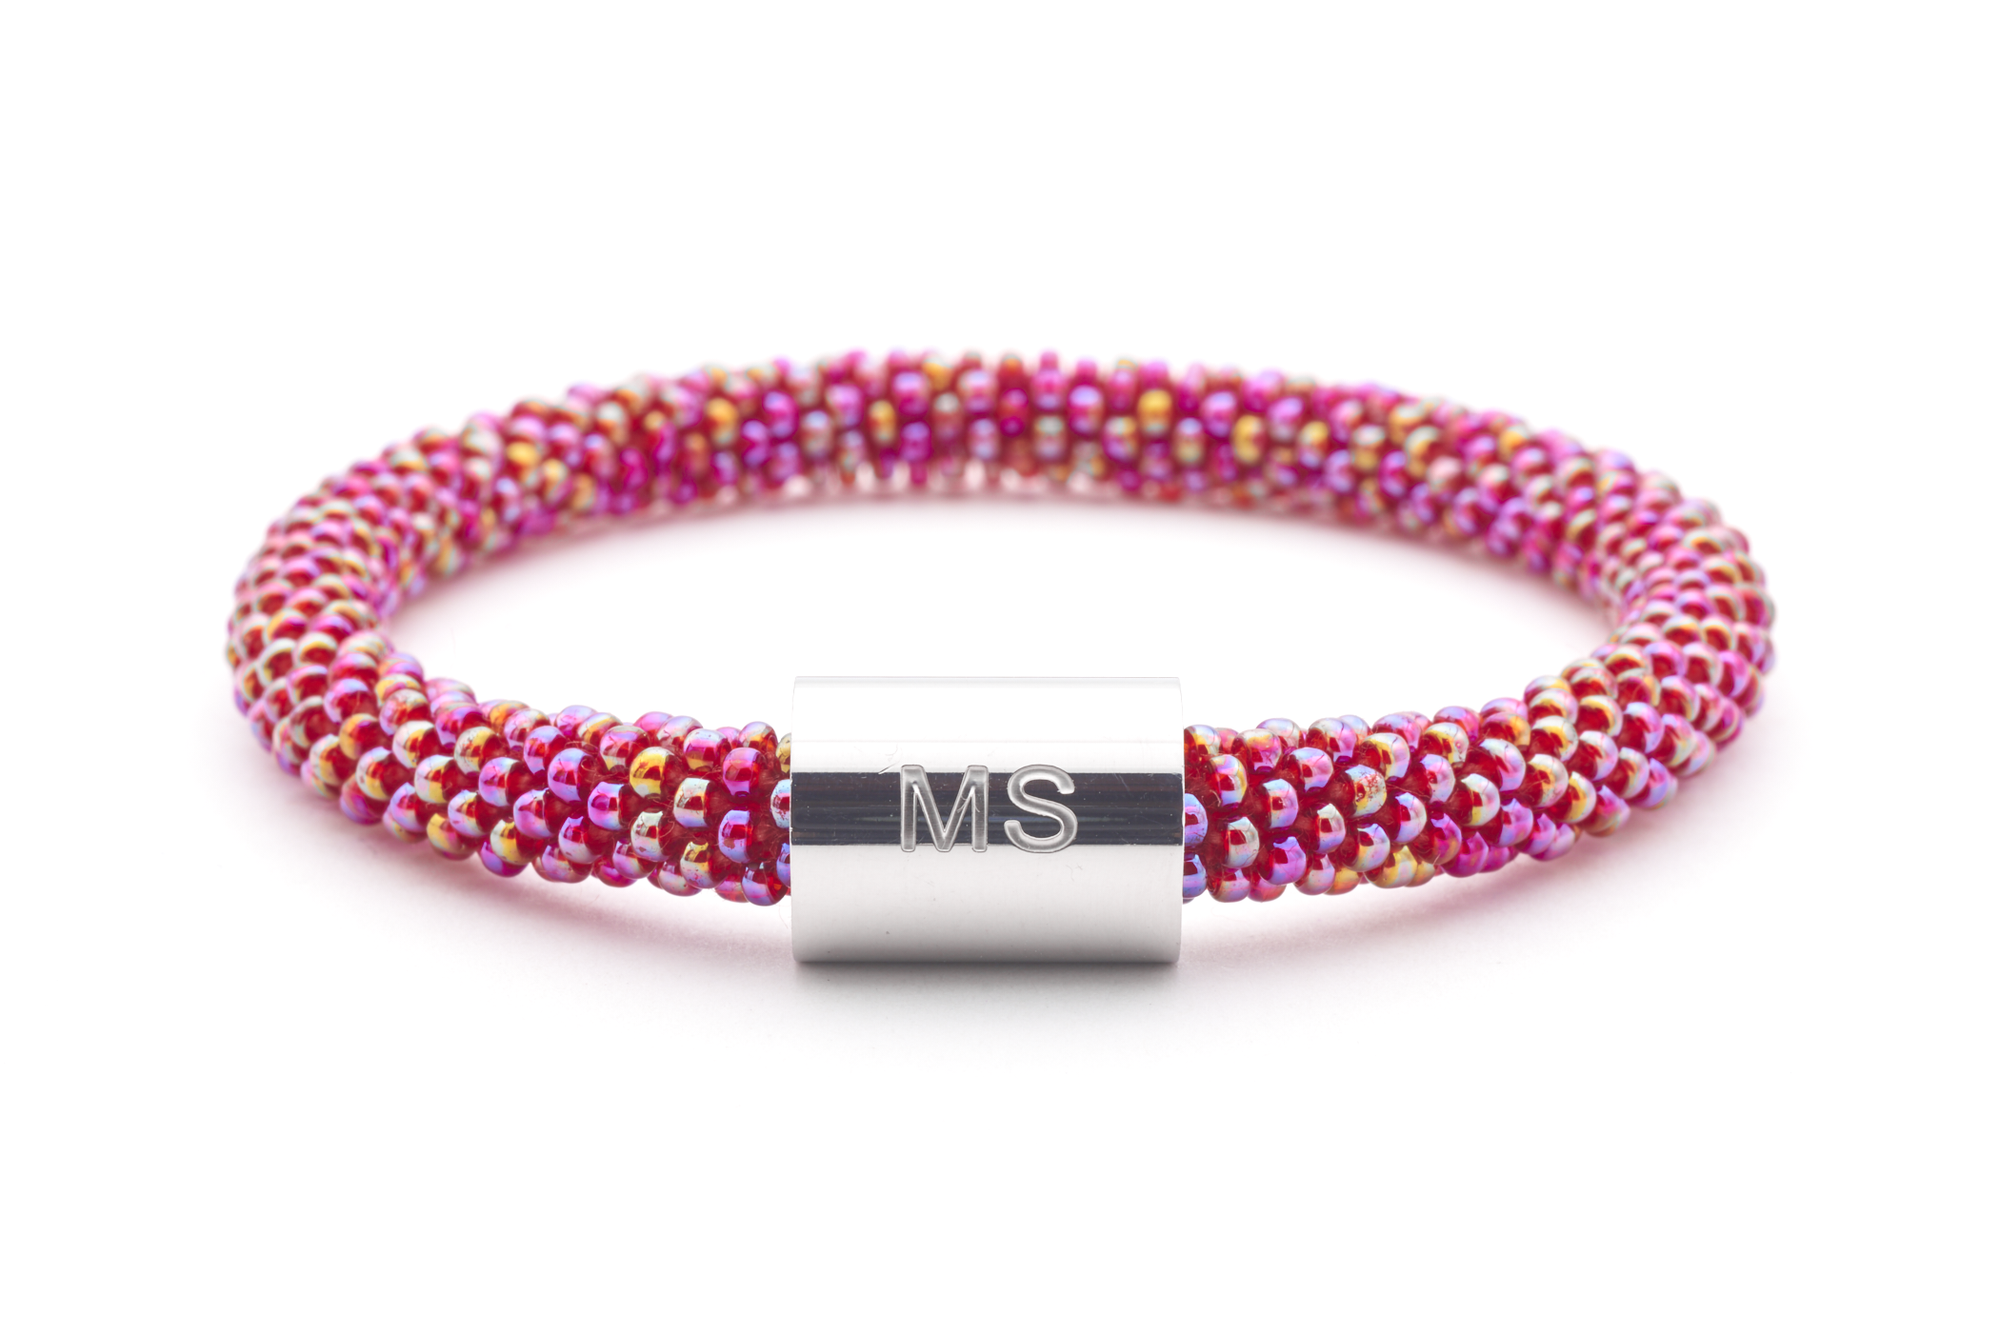 Sashka Co. Extended 8" Bracelet Iridescent Red /w Silver Charm Multiple Sclerosis Charm Bracelet - Extended 8"